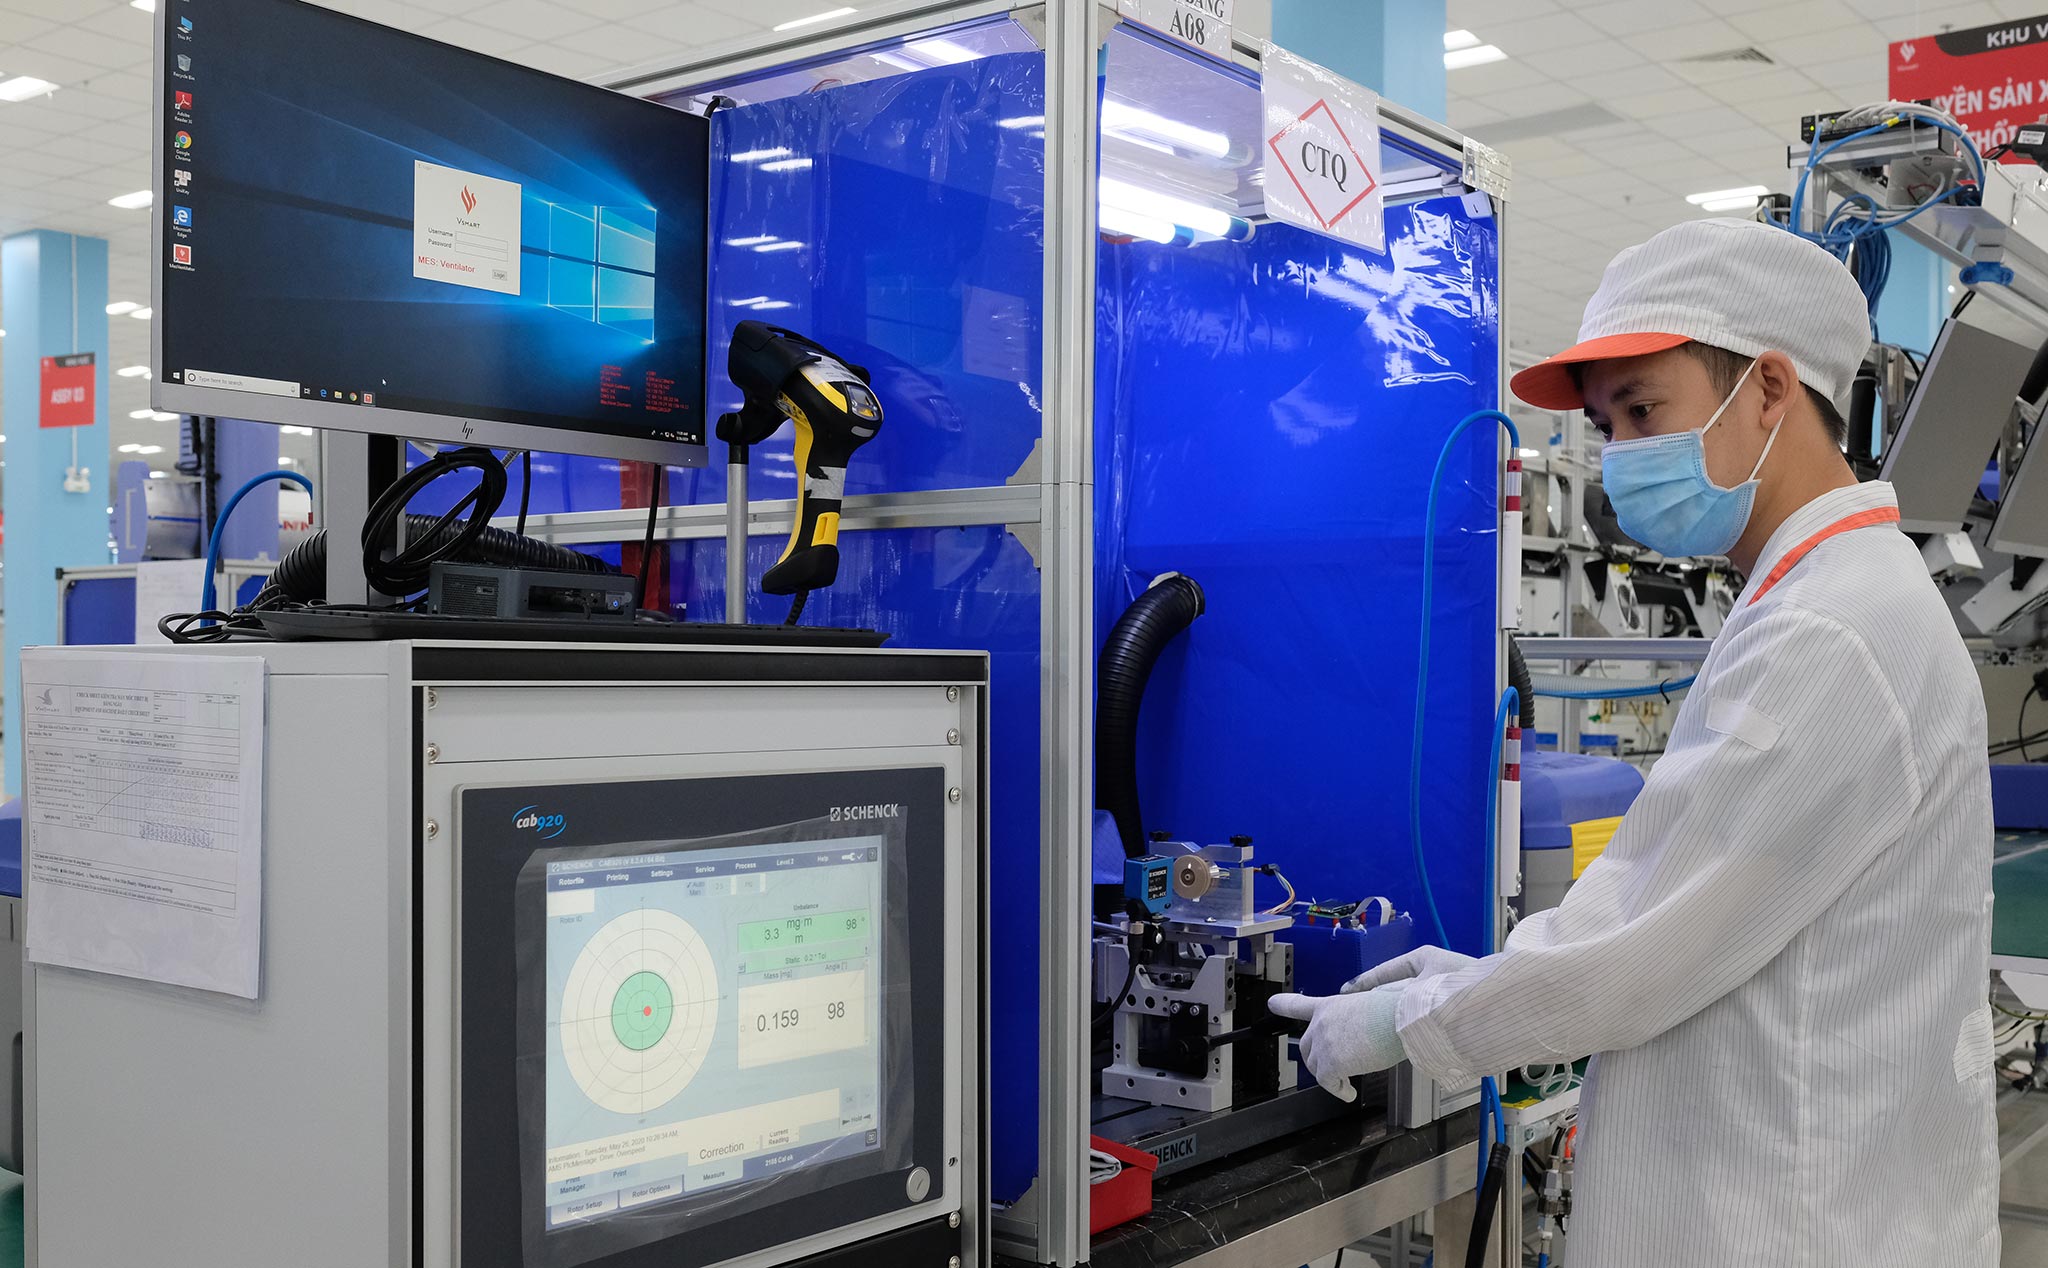 Vingroup sản xuất linh kiện máy thở cho Medtronic, dự kiến xuất khẩu đi Mỹ, Ireland